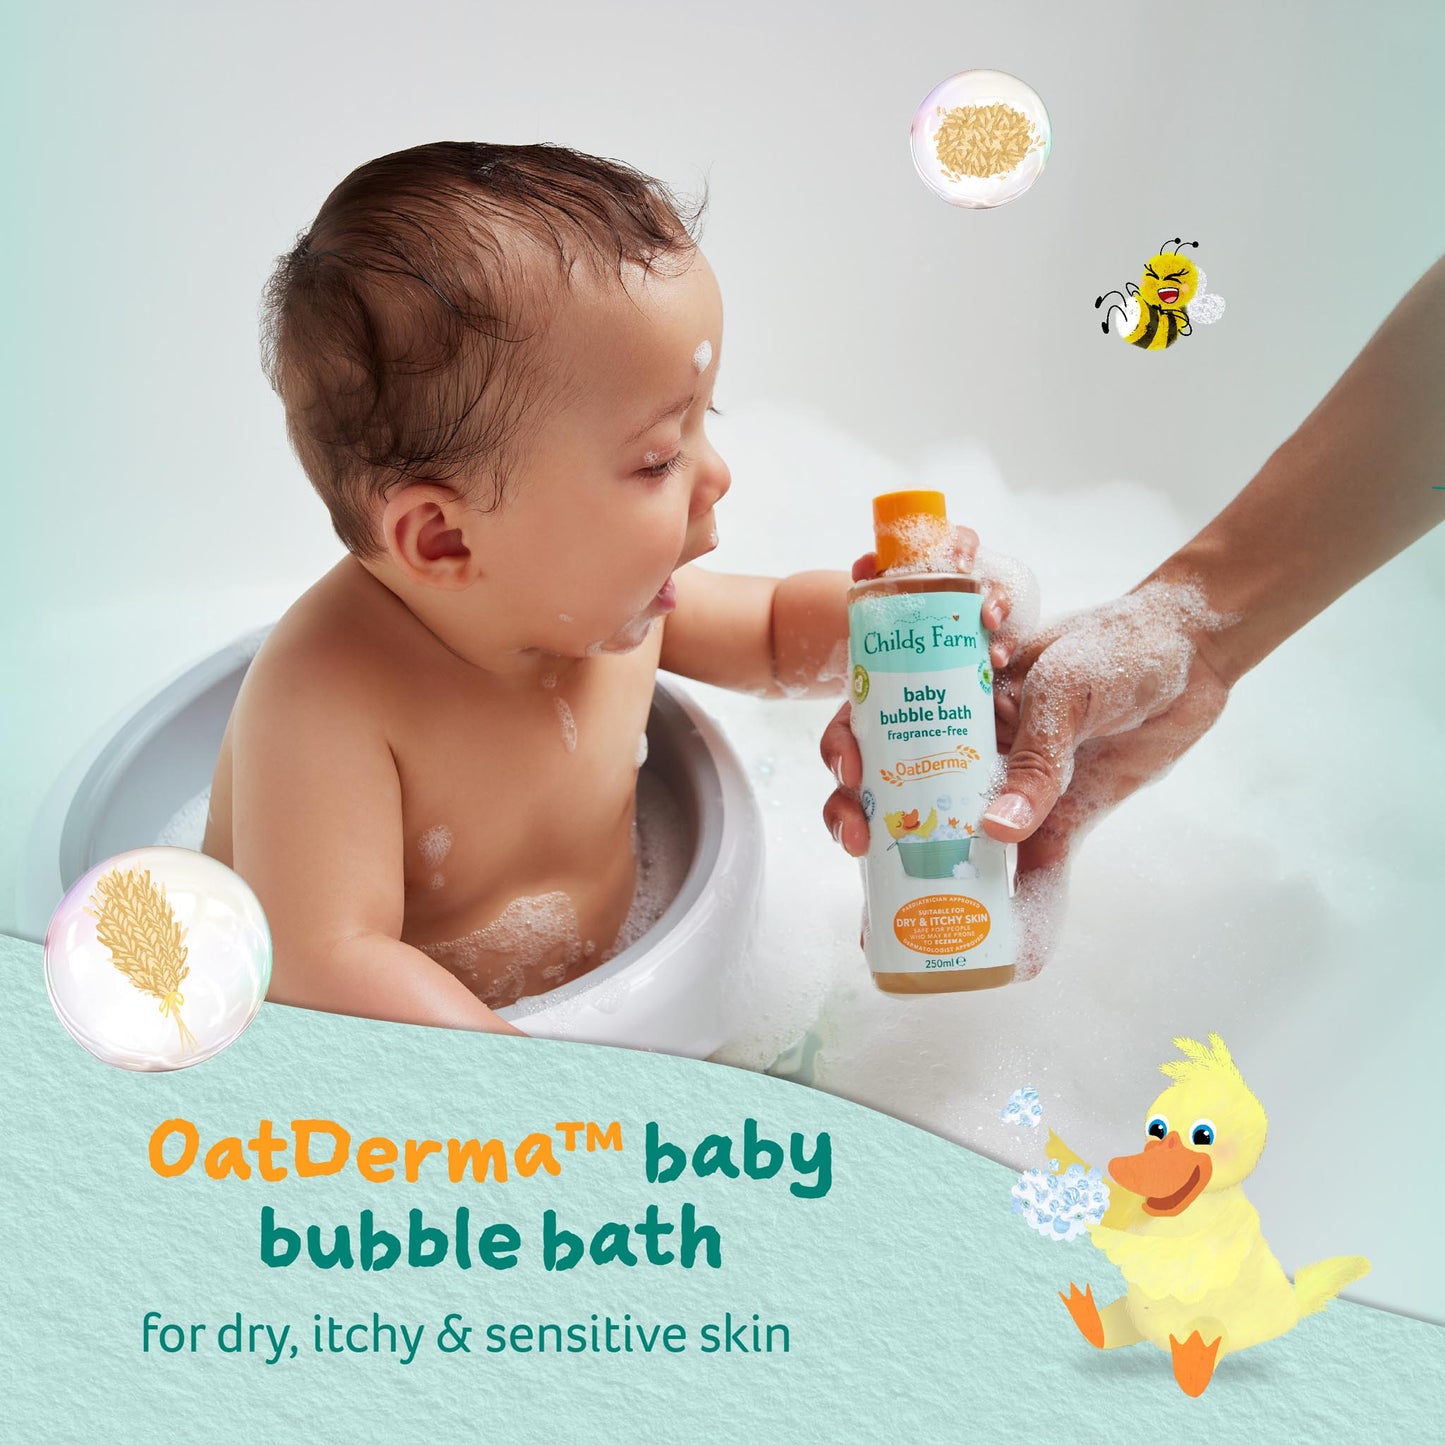 Childs Farm baby OatDerma™ bublinkový kúpeľ bez parfumácie